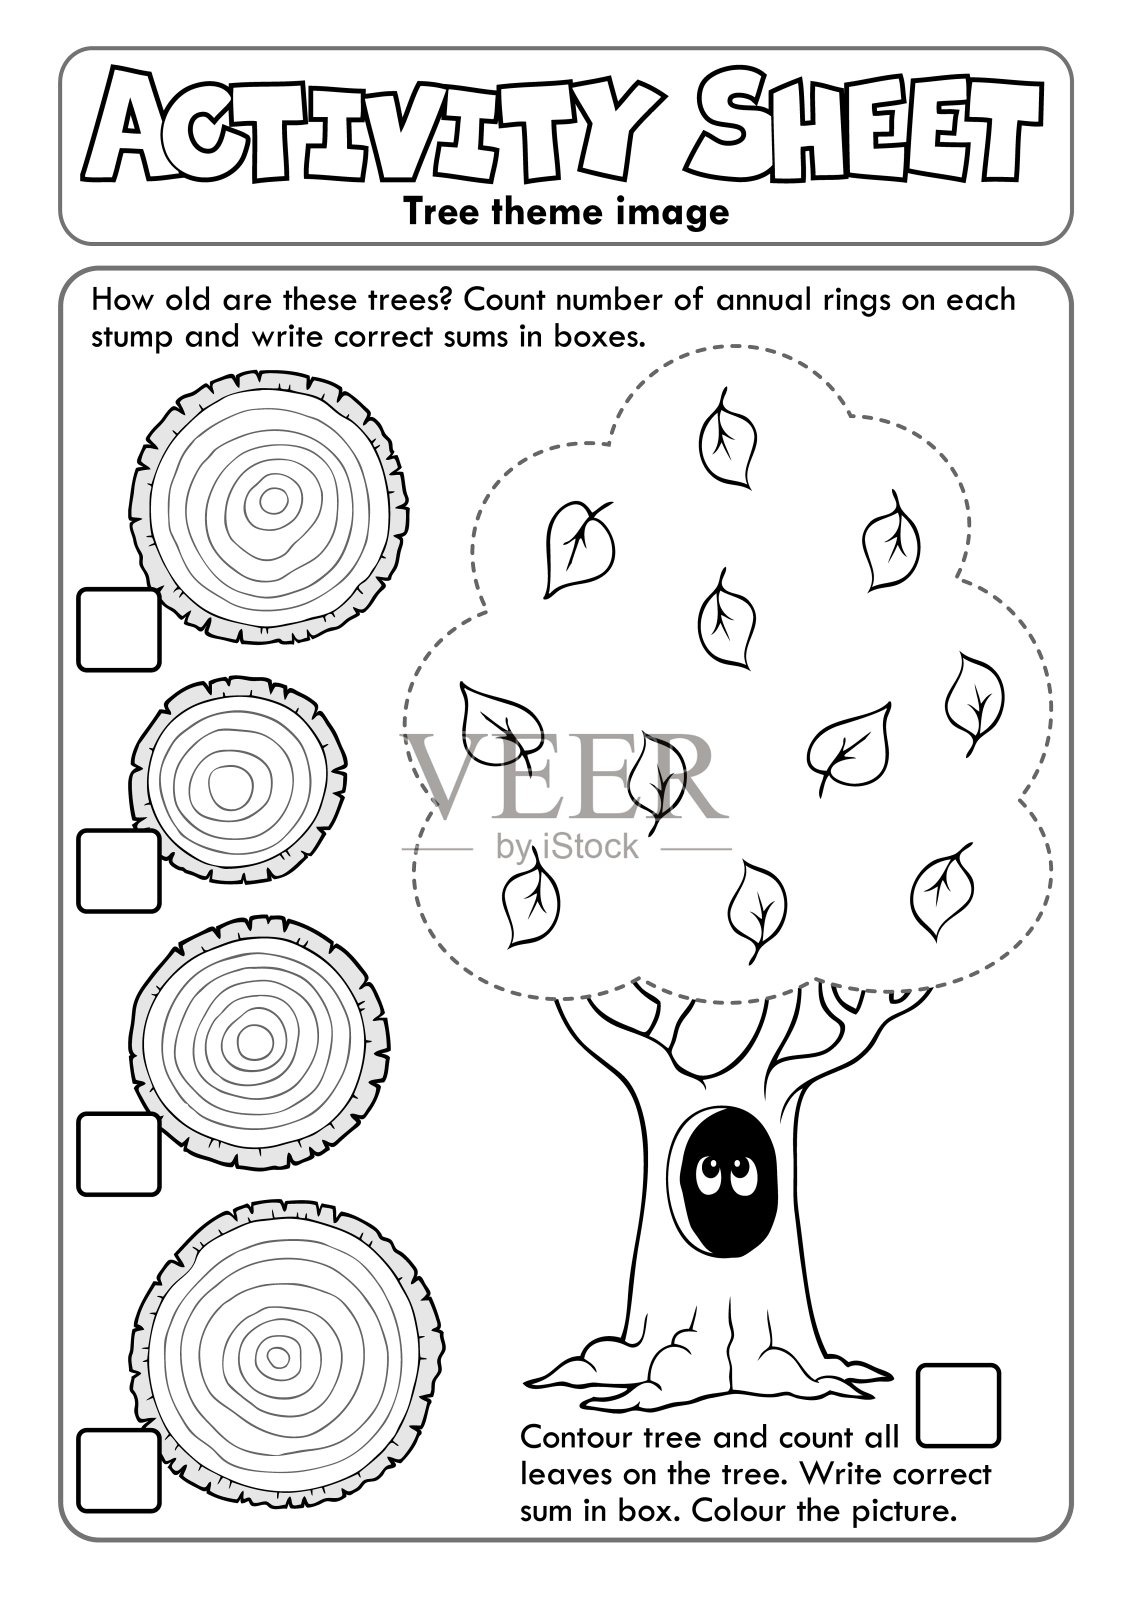 活动表树主题1插画图片素材